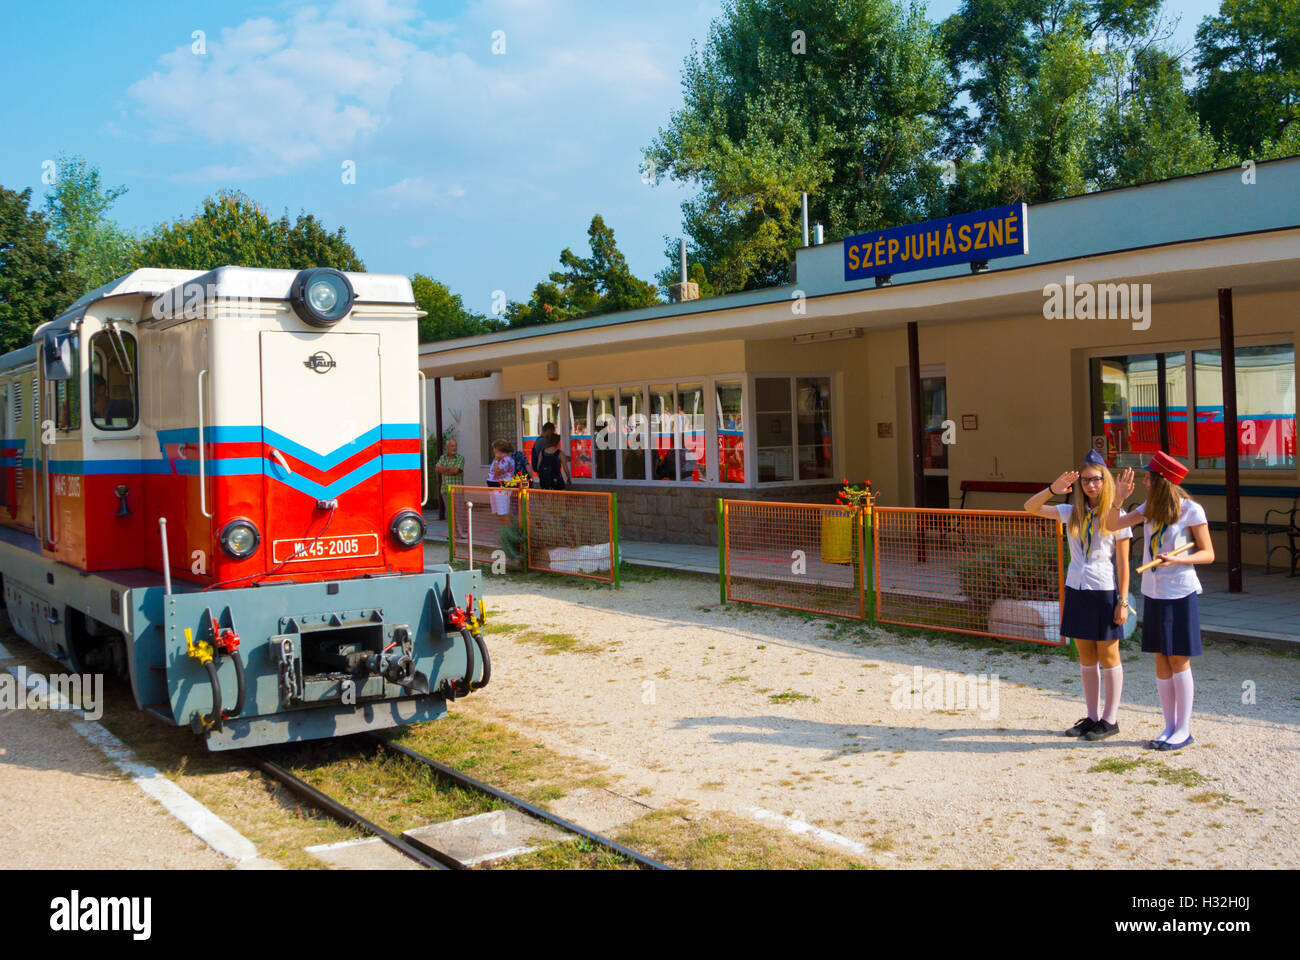 Gyermekvasut, Children's railway, Buda, Budapest, Hungary, Europe Stock  Photo - Alamy